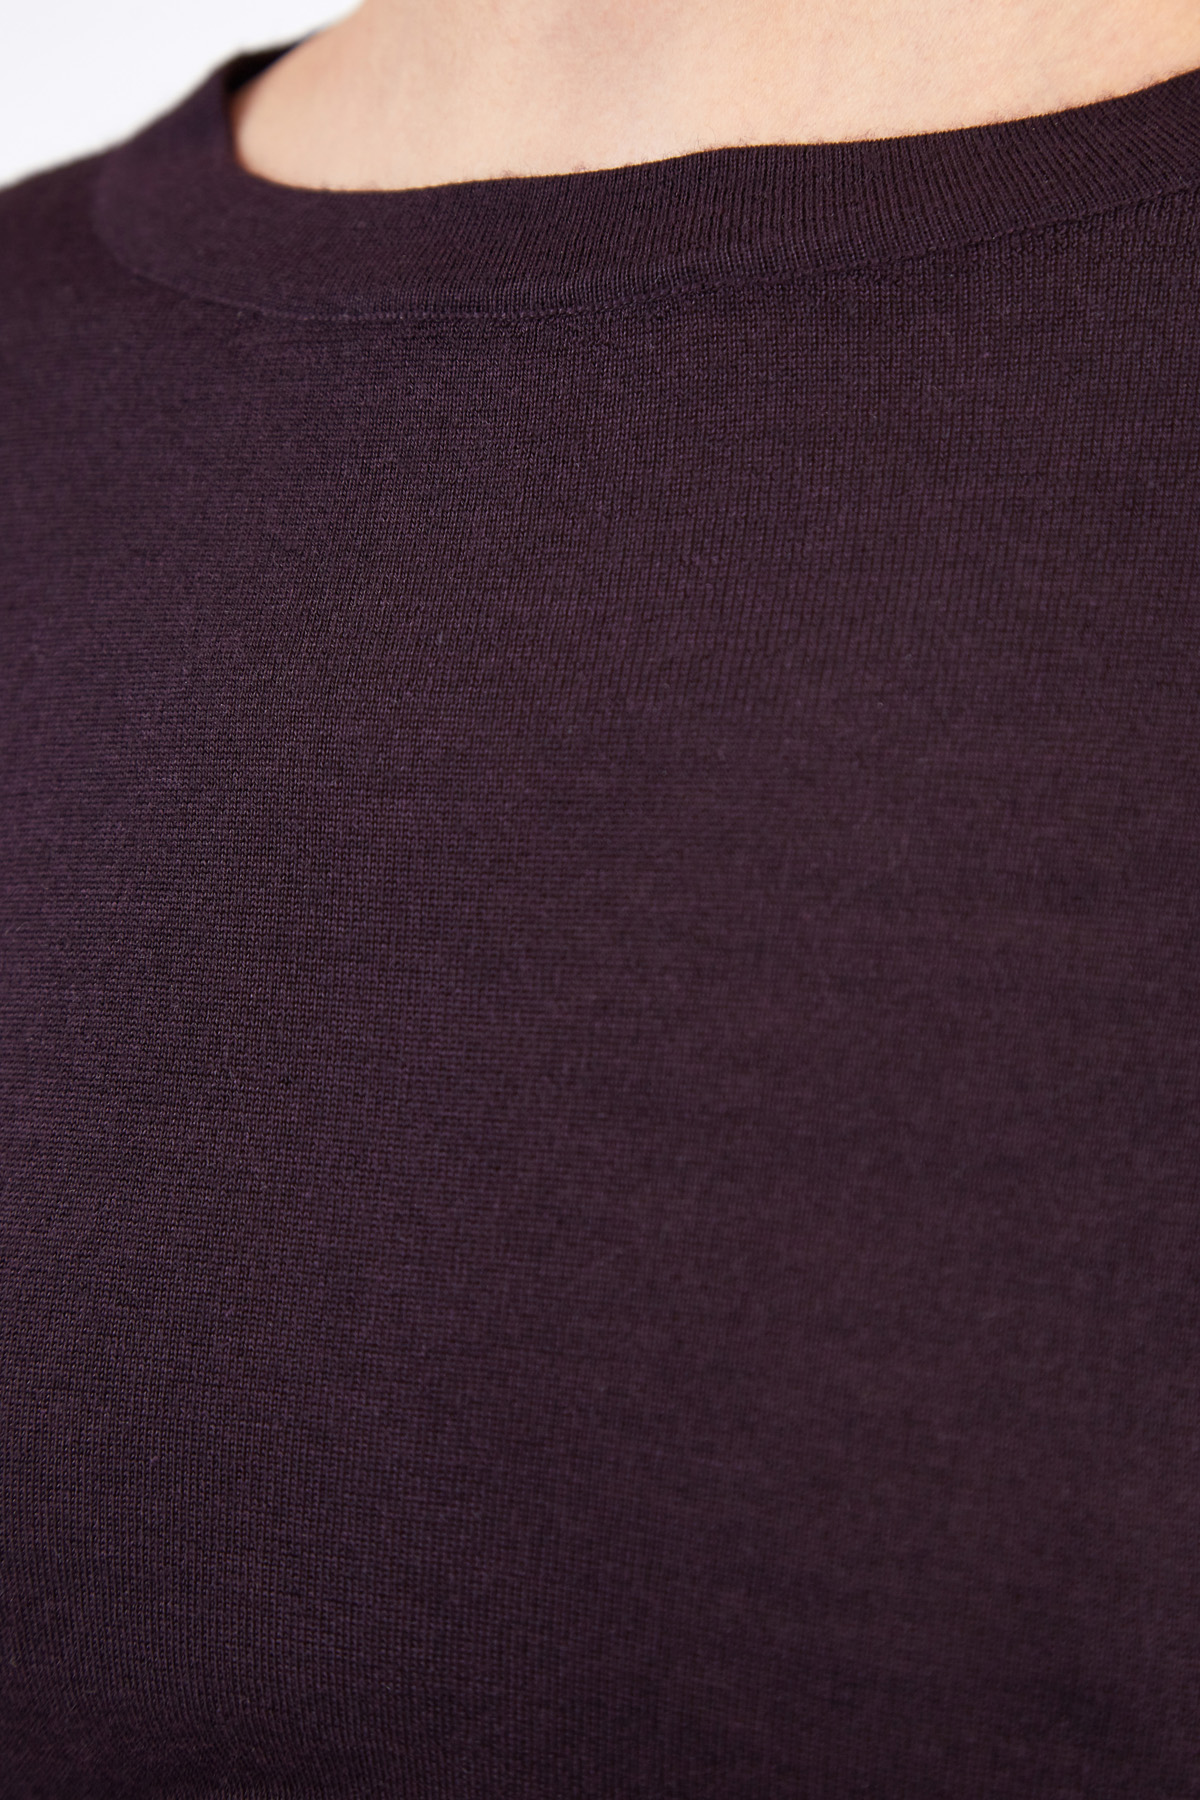 Женский джемпер из кашемира и шелка глубокого сливового цвета BRUNELLO CUCINELLI, размер 46 - фото 5